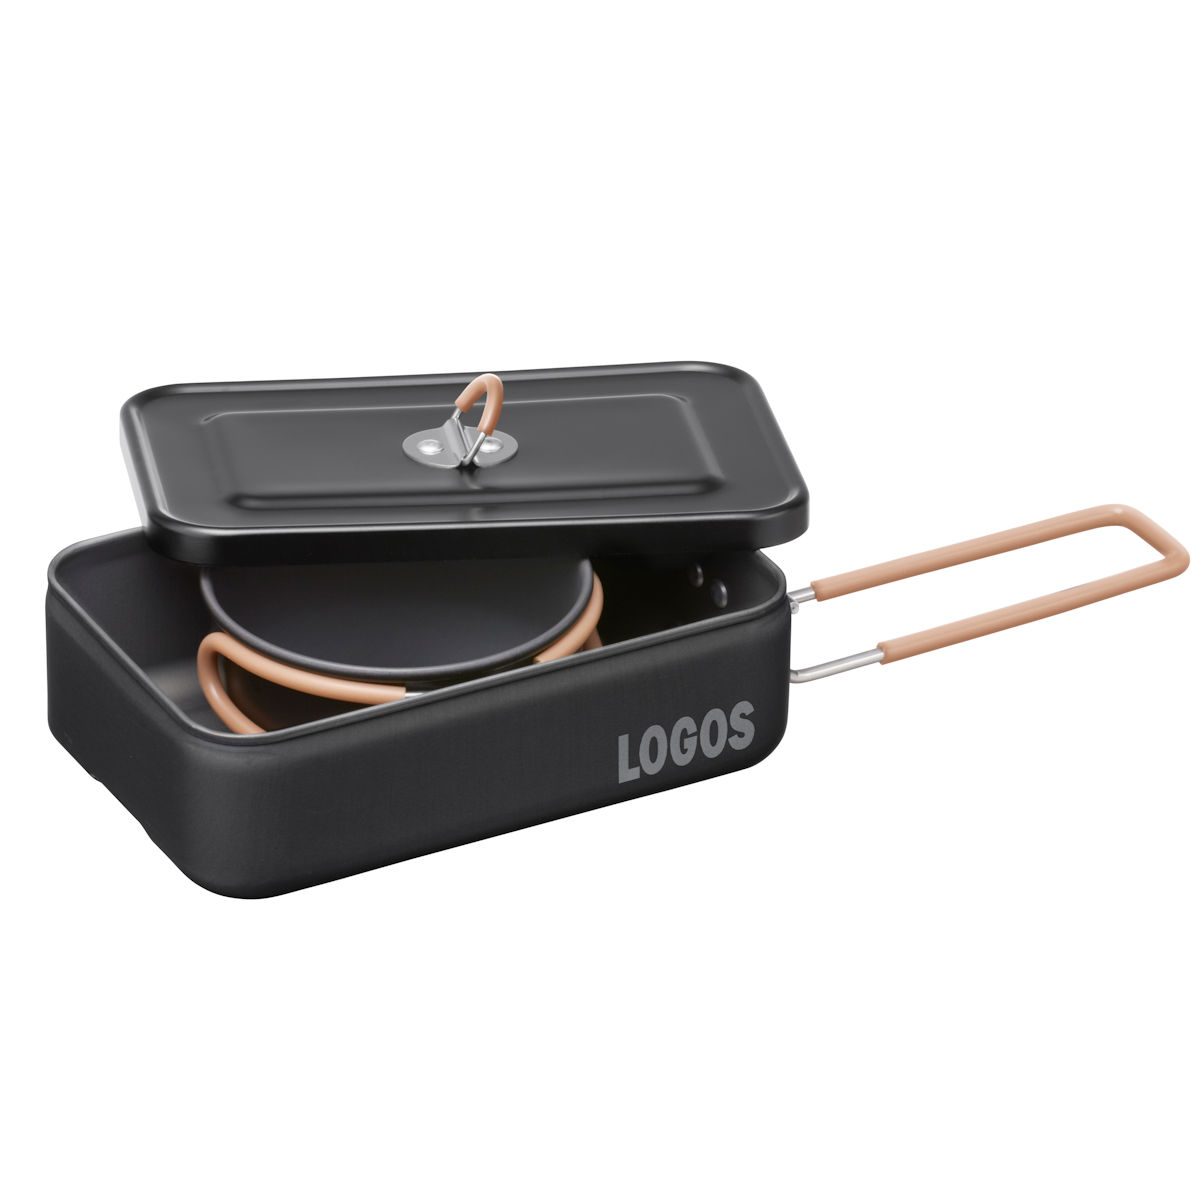 LOGOS クッカー・メスキットセット-BA|ギア|キッチンツール|調理器具 